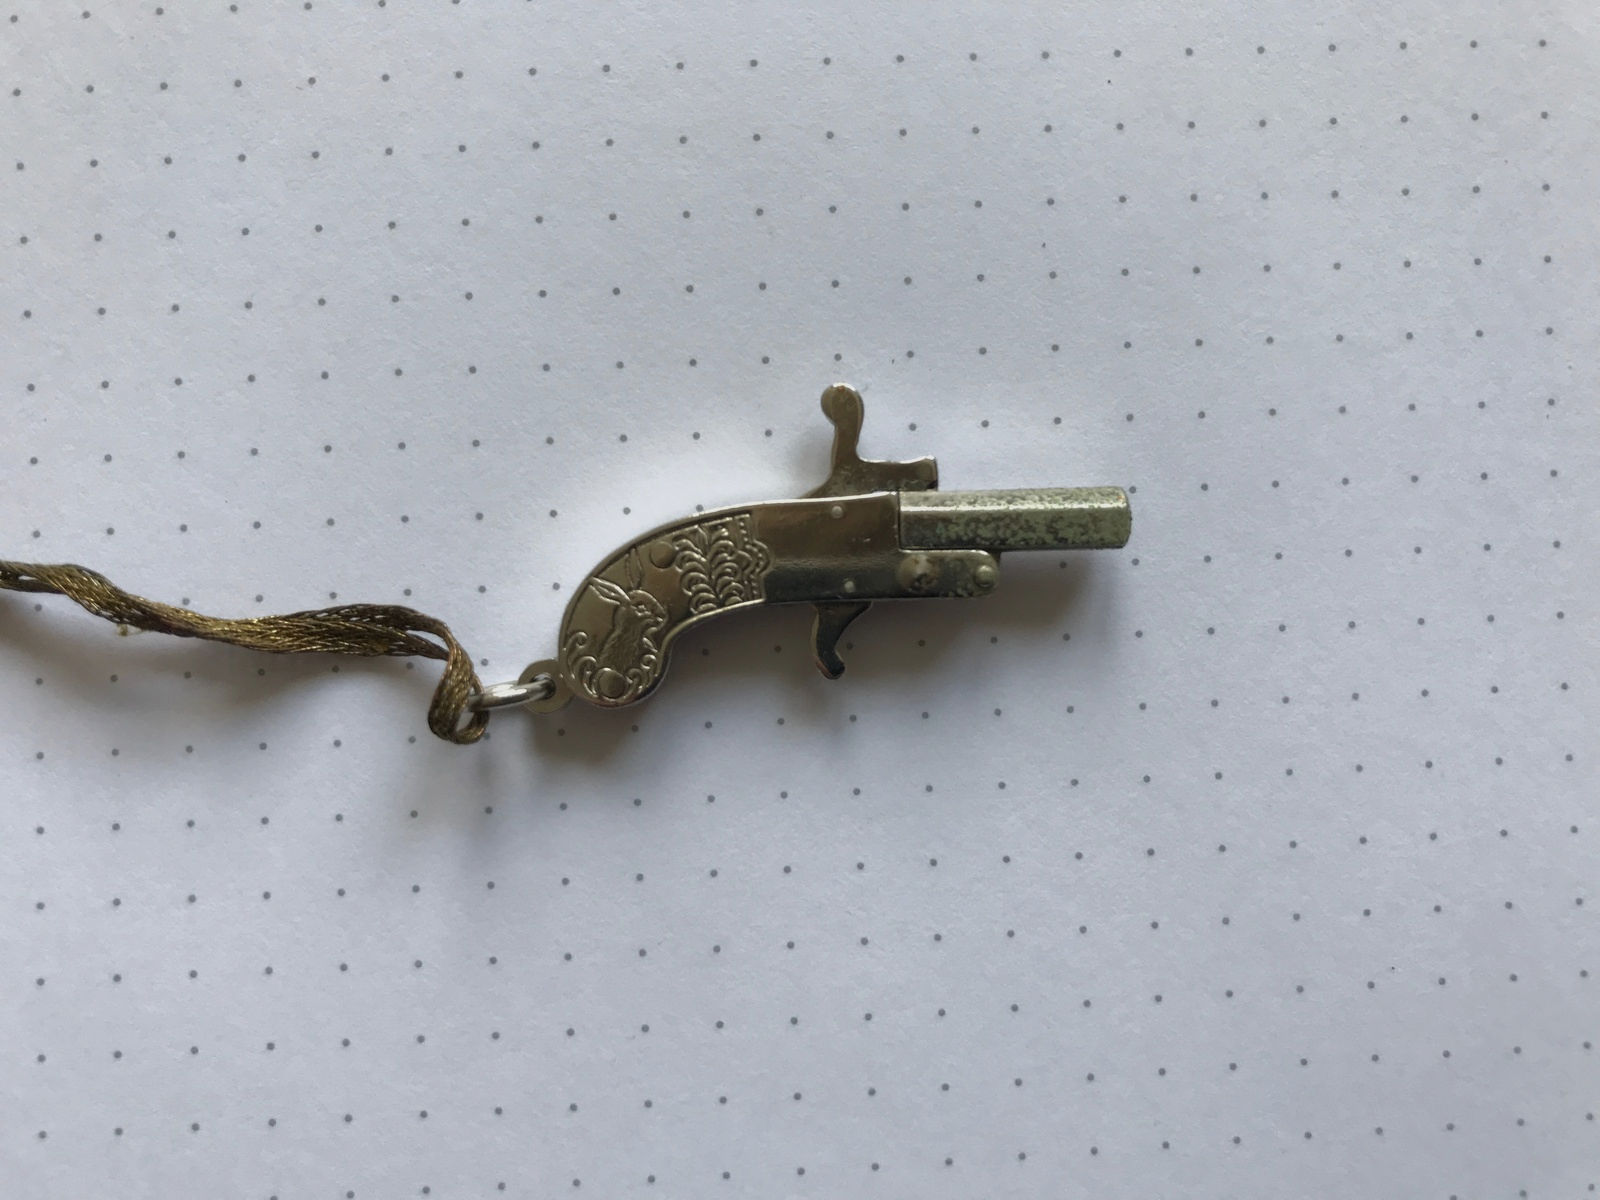 Berloque Pinfire 2 mm kleine Schreckschuss Pistole